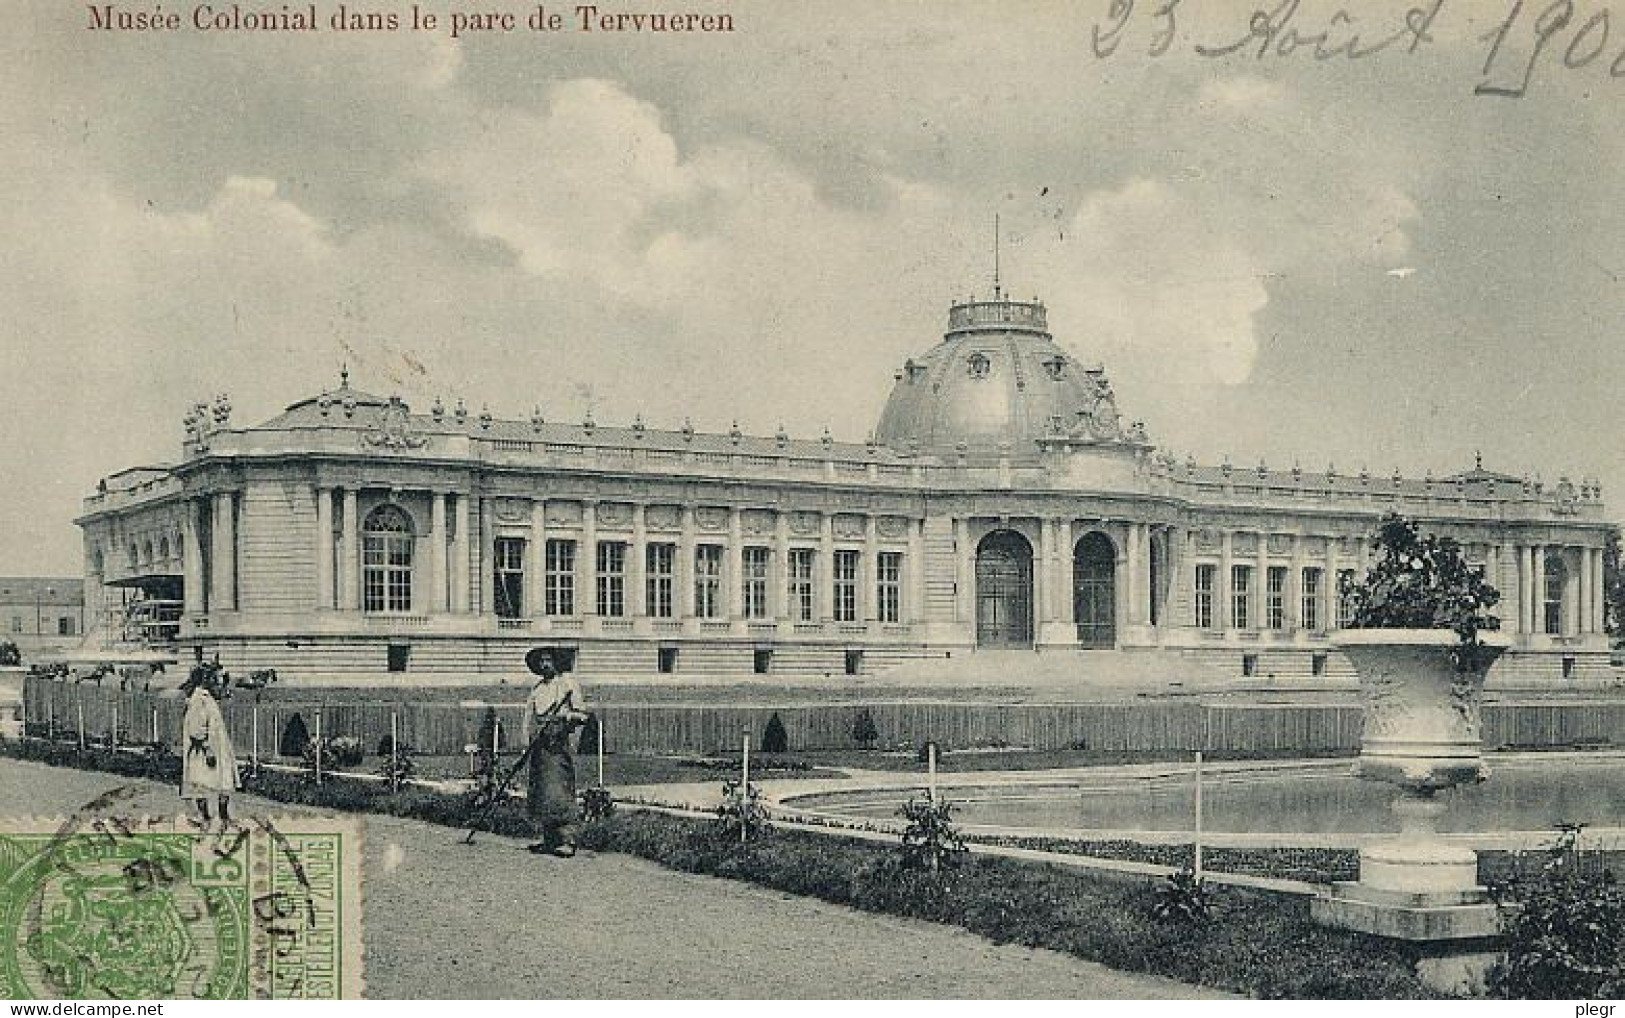 BEL04 01 02 - BRUXELLES / BRUSSEL - MUSEE COLONIAL DANS LE PARC DE TERVUEREN - Museums